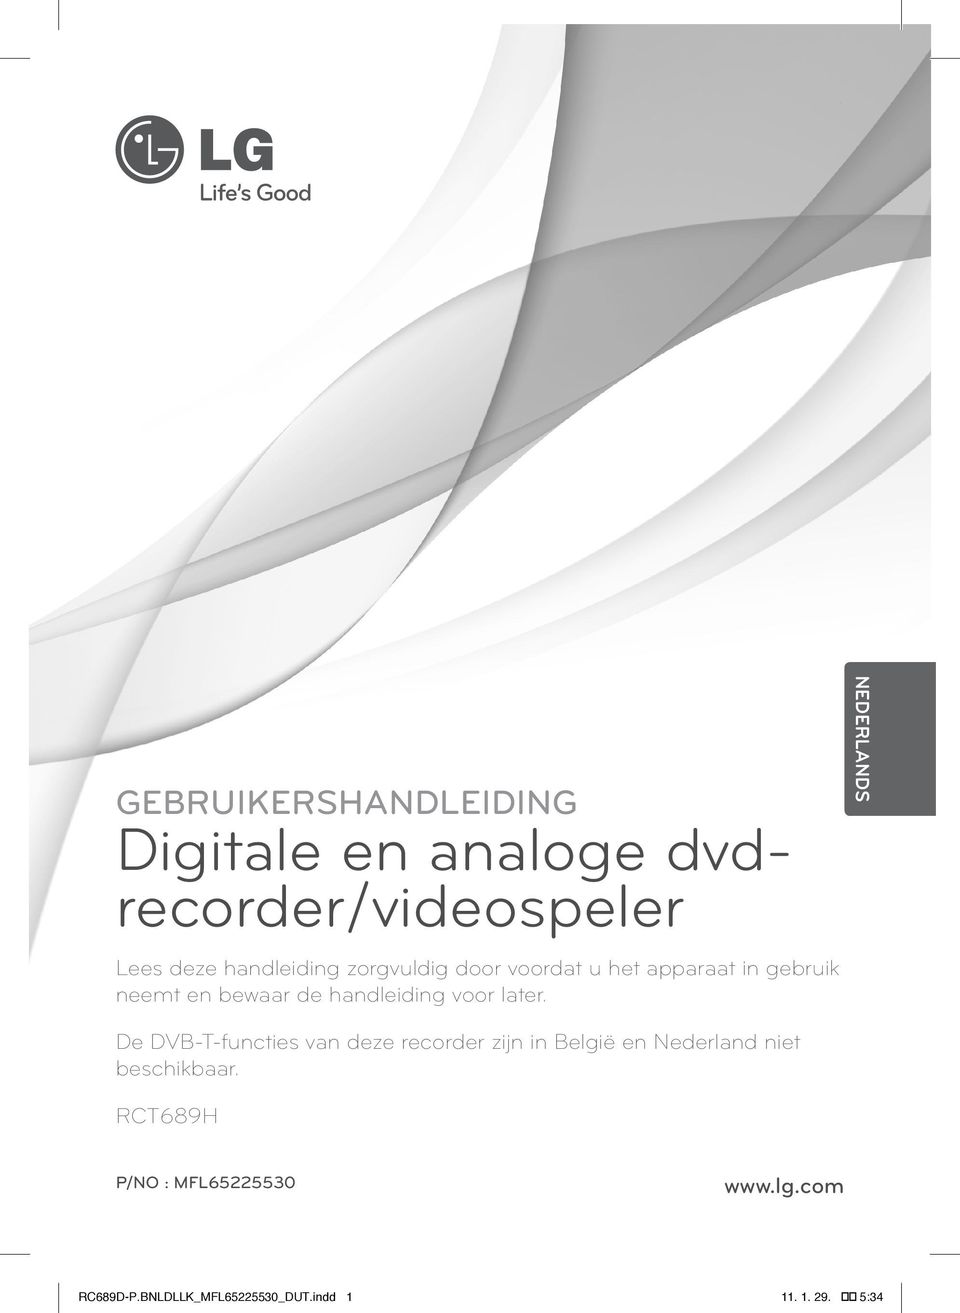 NEDERLANDS De DVB-T-functies van deze recorder zijn in België en Nederland niet beschikbaar.